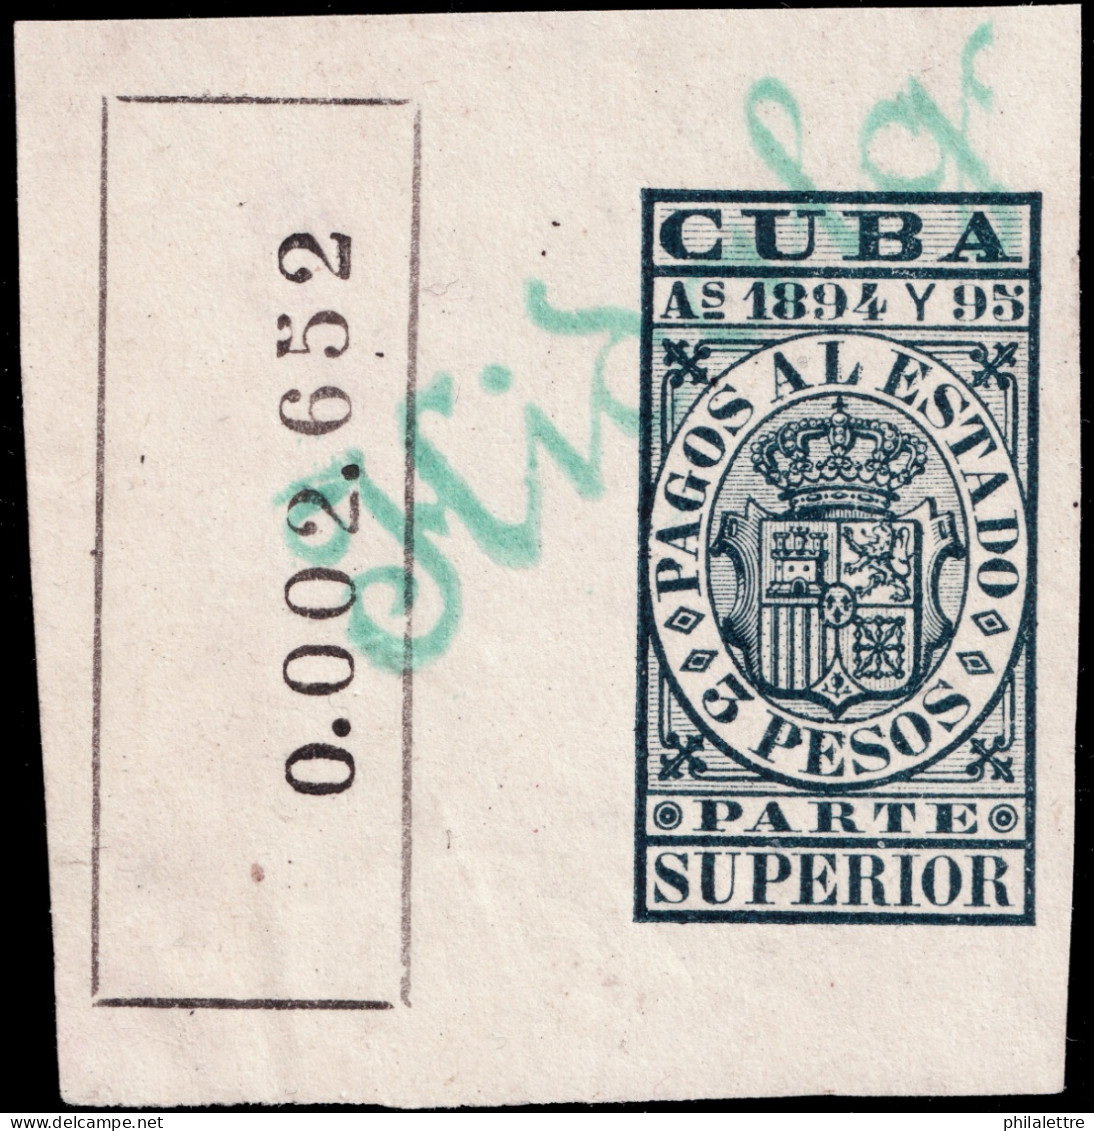 ESPAGNE / ESPANA - COLONIAS (Cuba) 1894/95 "PAGOS AL ESTADO" Fulcher 1142 3P Parte Superior Usado (0.002.652) - Cuba (1874-1898)